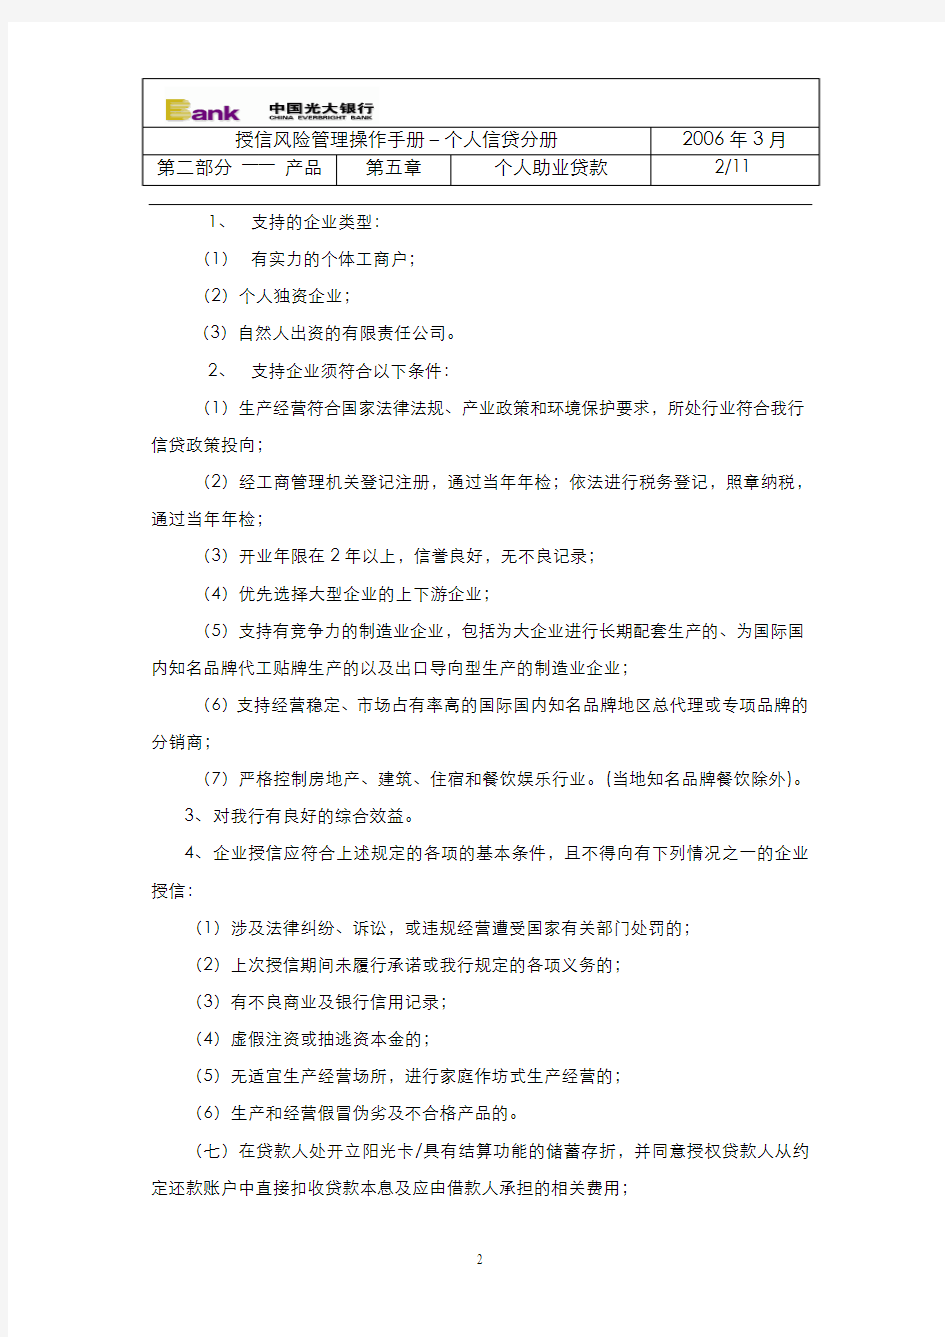 105中国光大银行个人助业贷款管理办法